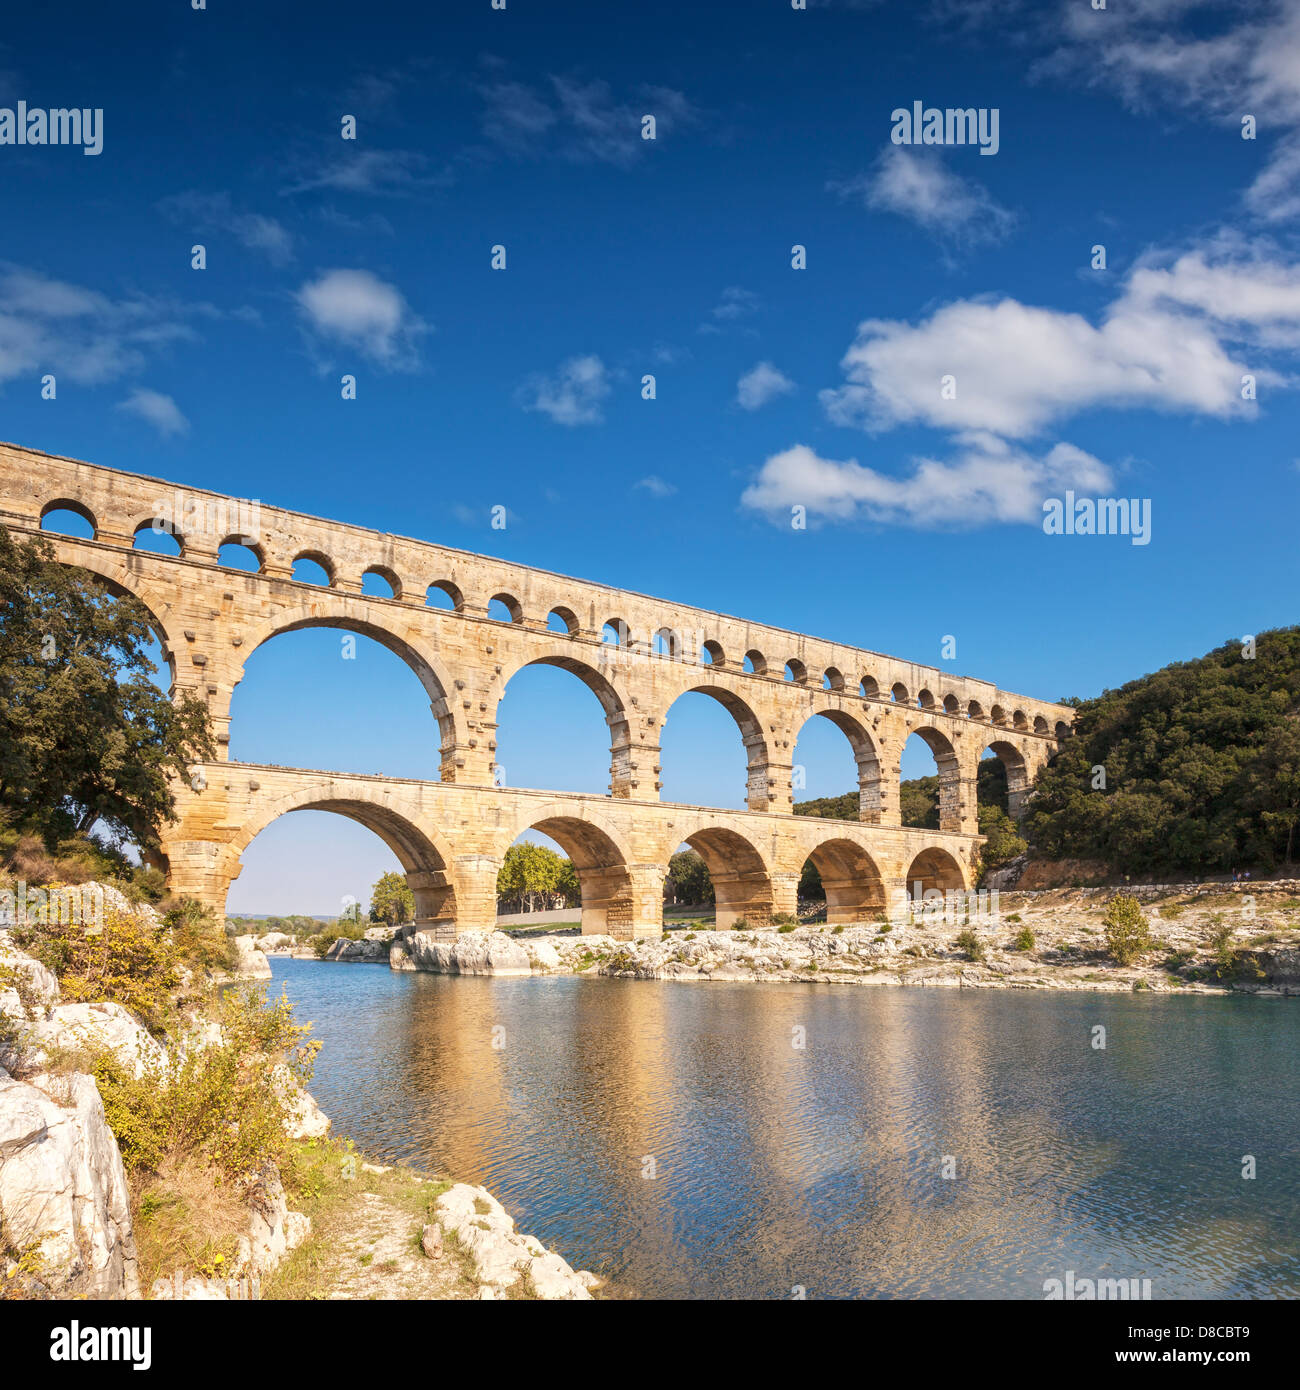 Acueducto romano de Pont du Gard Languedoc-Rosellón Francia. El Acueducto Romano de 2000 años de antigüedad es una gran atracción turística. Foto de stock